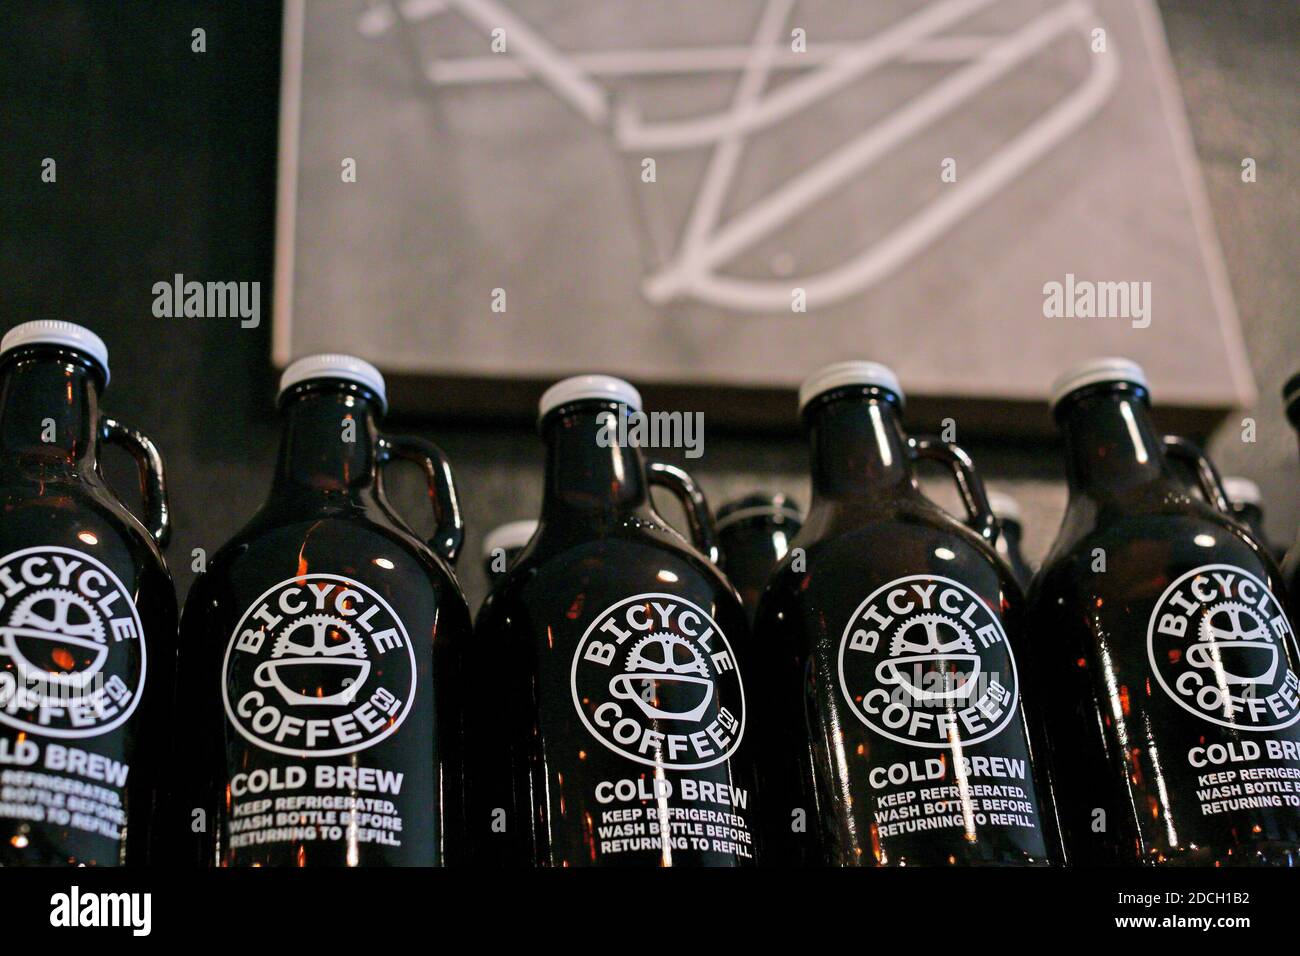 ÉTATS-UNIS / Californie / Oakland / Coffee style / bouteilles de café Cold Brew Banque D'Images